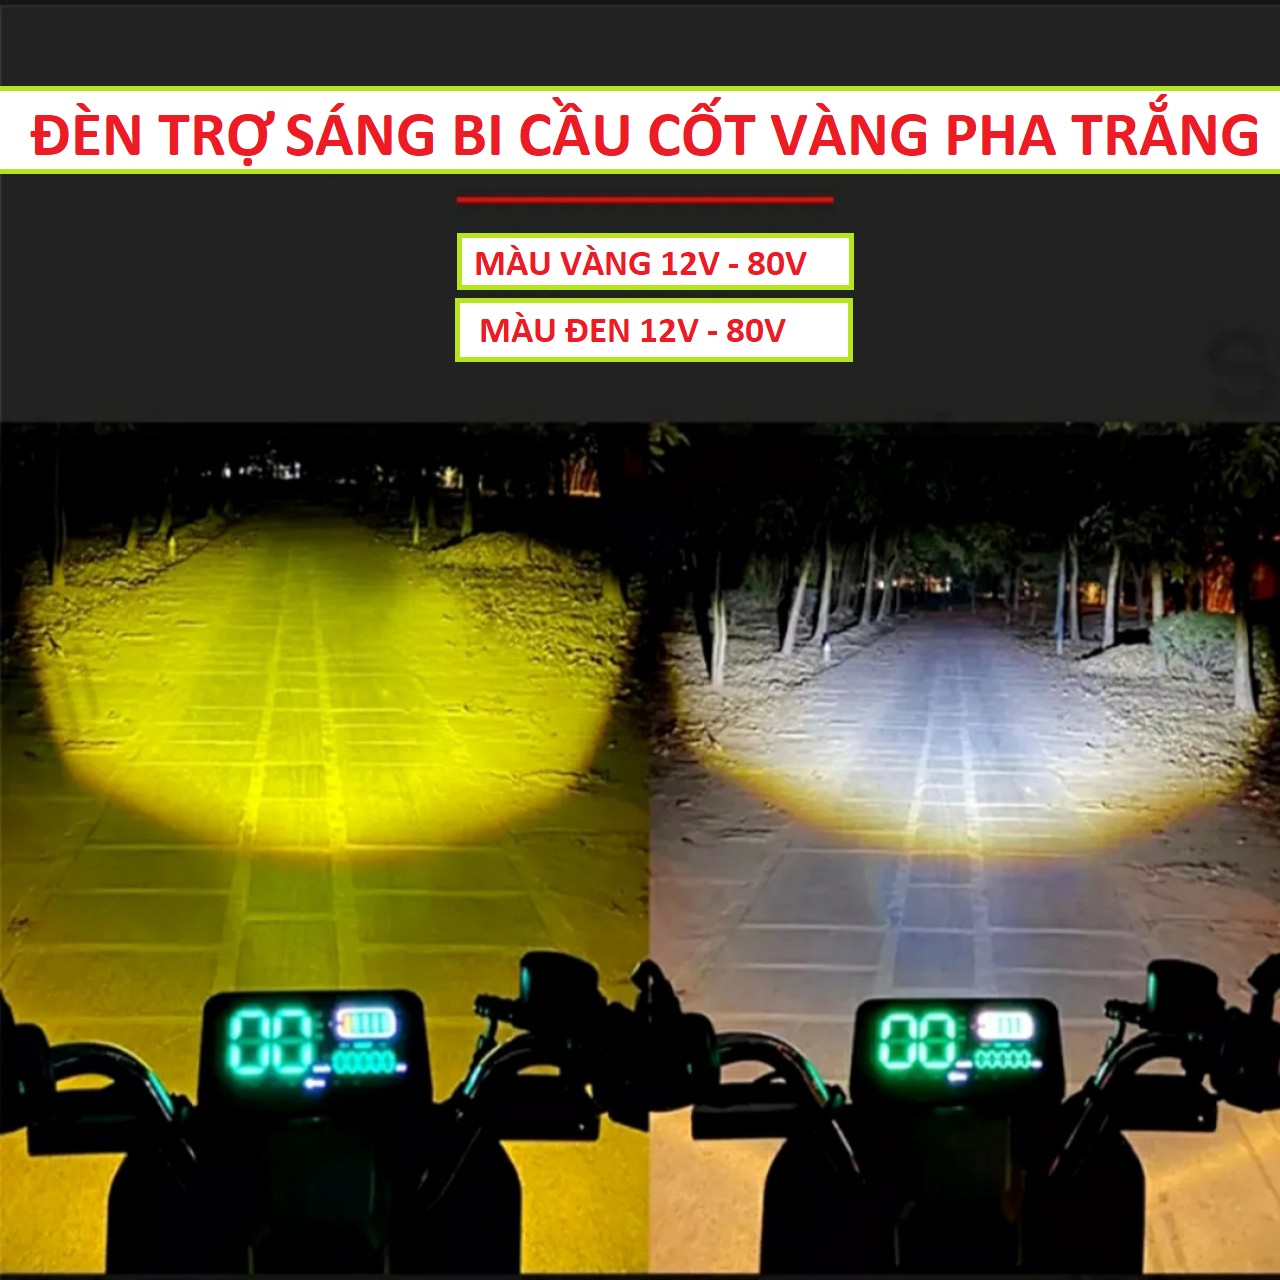 Đèn trợ sáng xe máy ô tô 45W, 12v-80v cốt vàng pha trắng 2 màu siêu gom mẫu mới chống nước